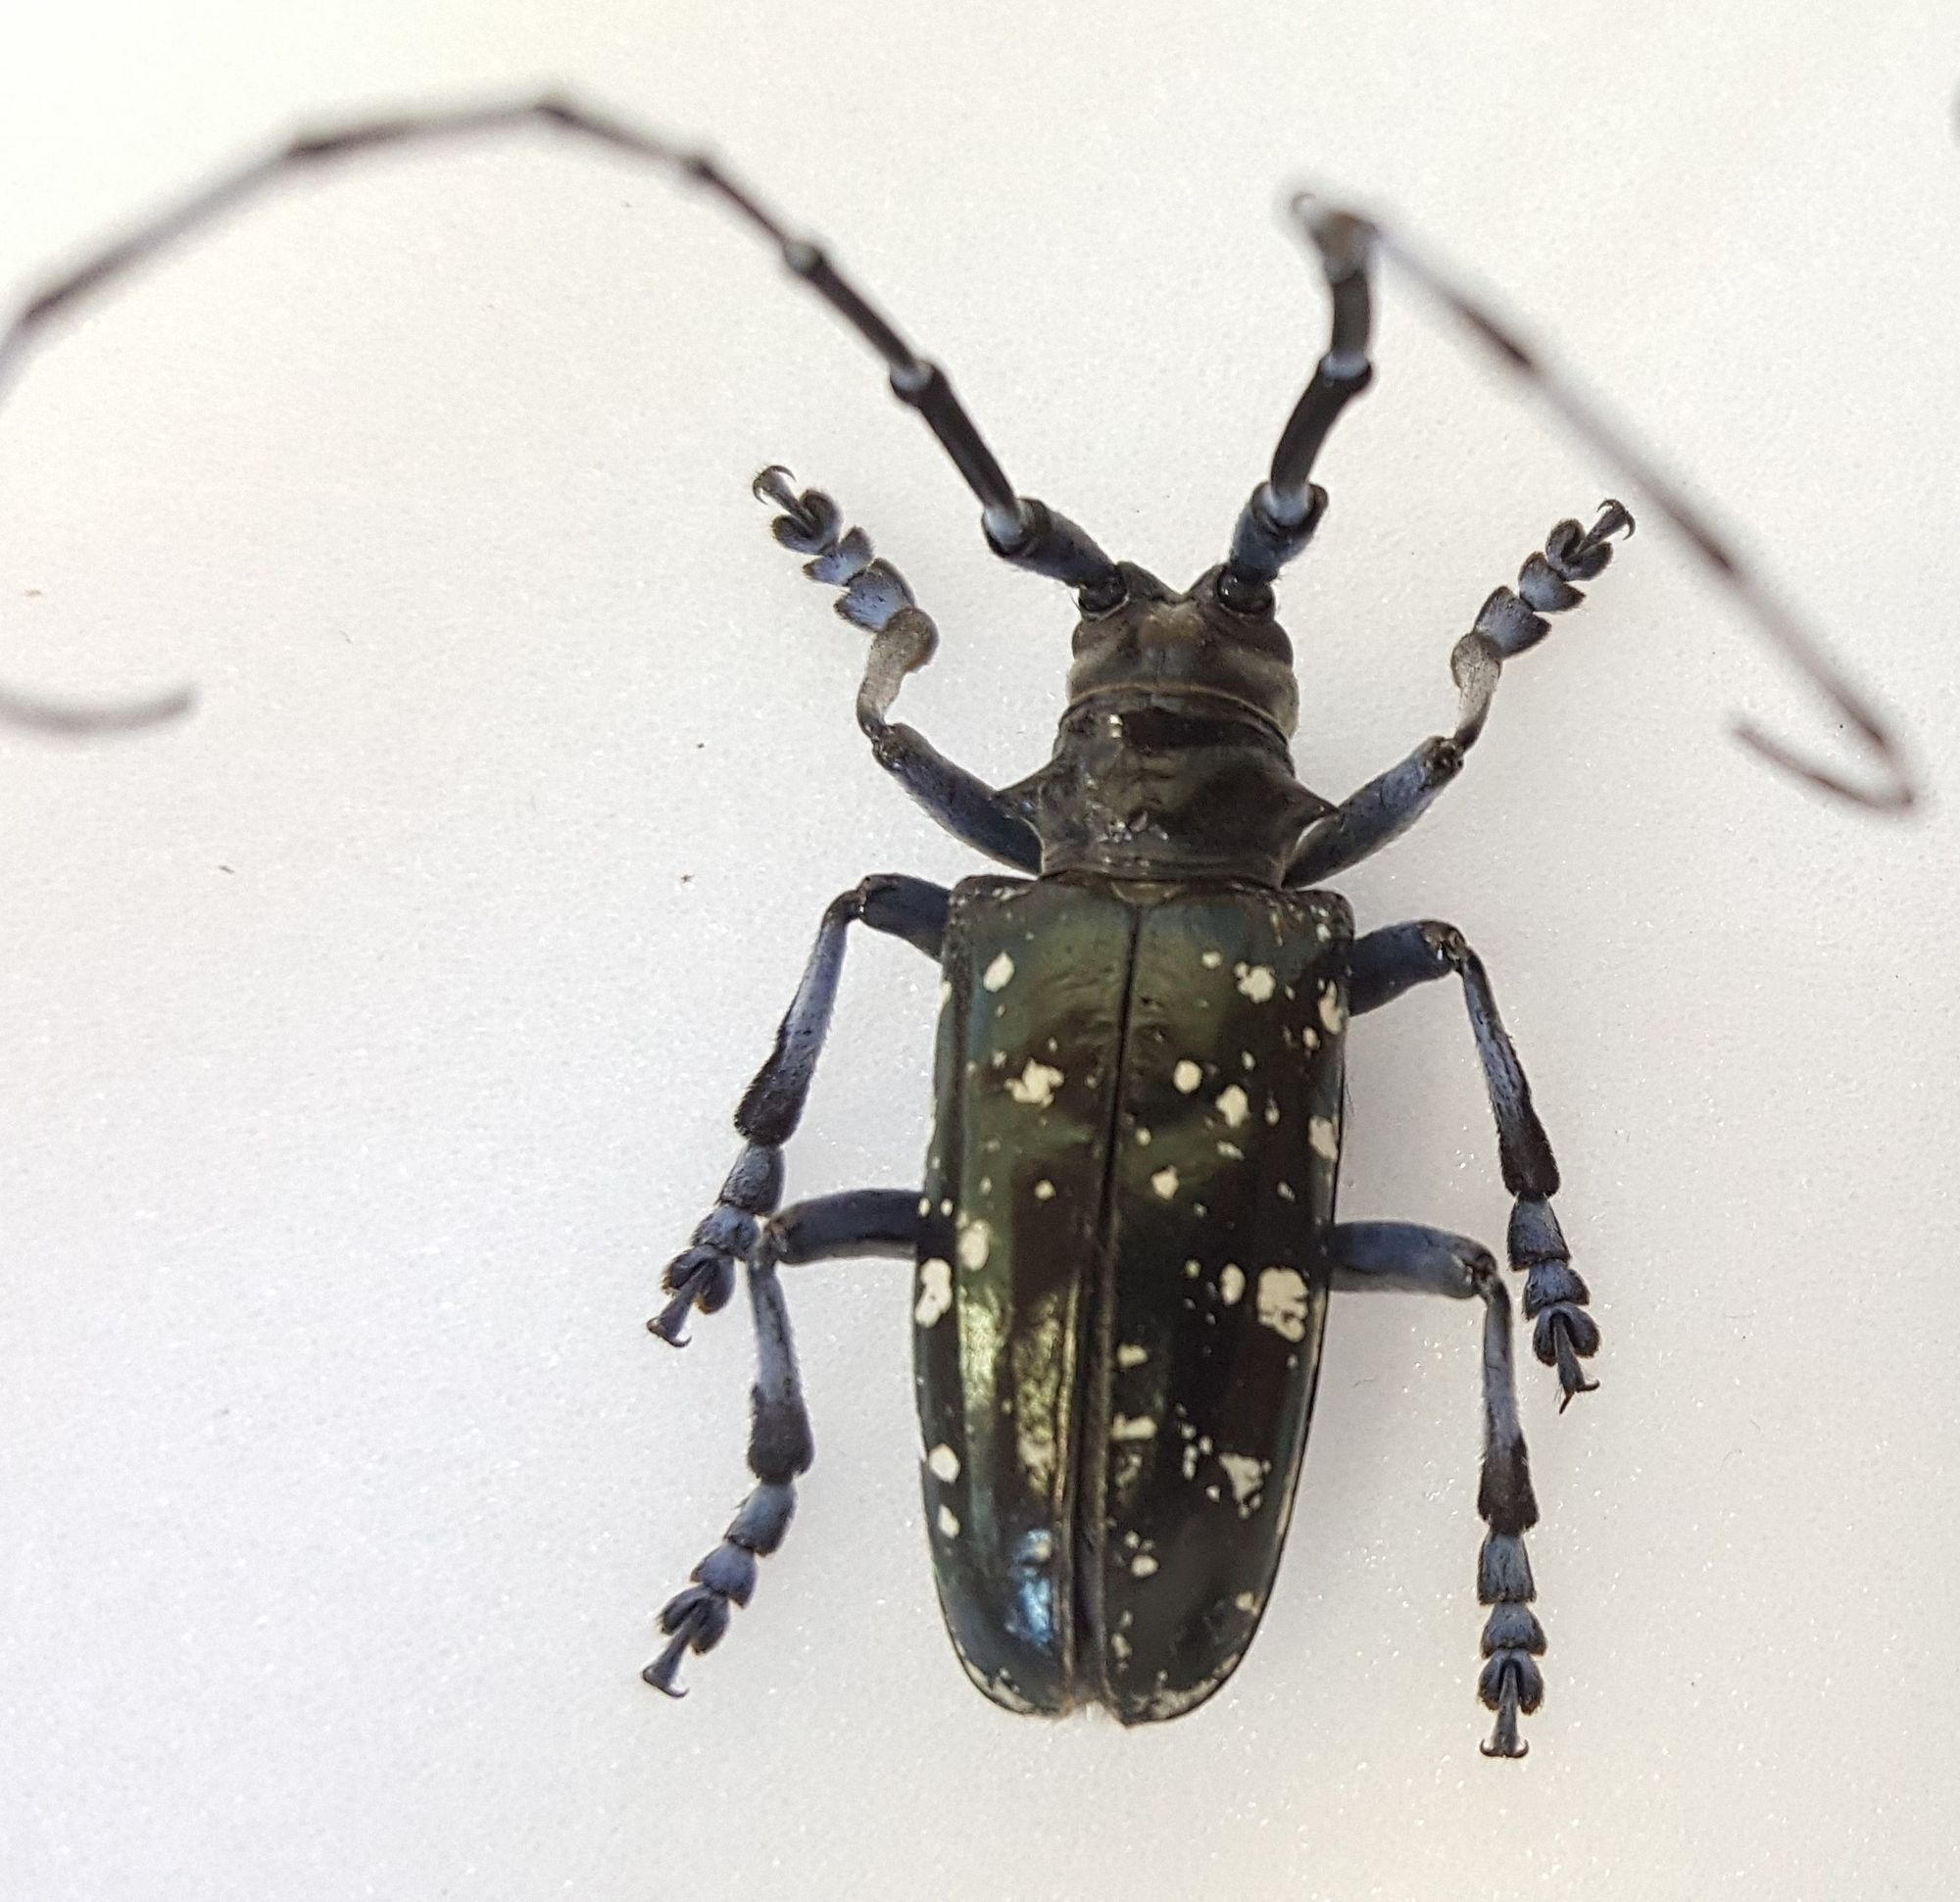 asian longhorn beetle https://extension.unh.edu/resource/european-corn-borer-fact-sheet